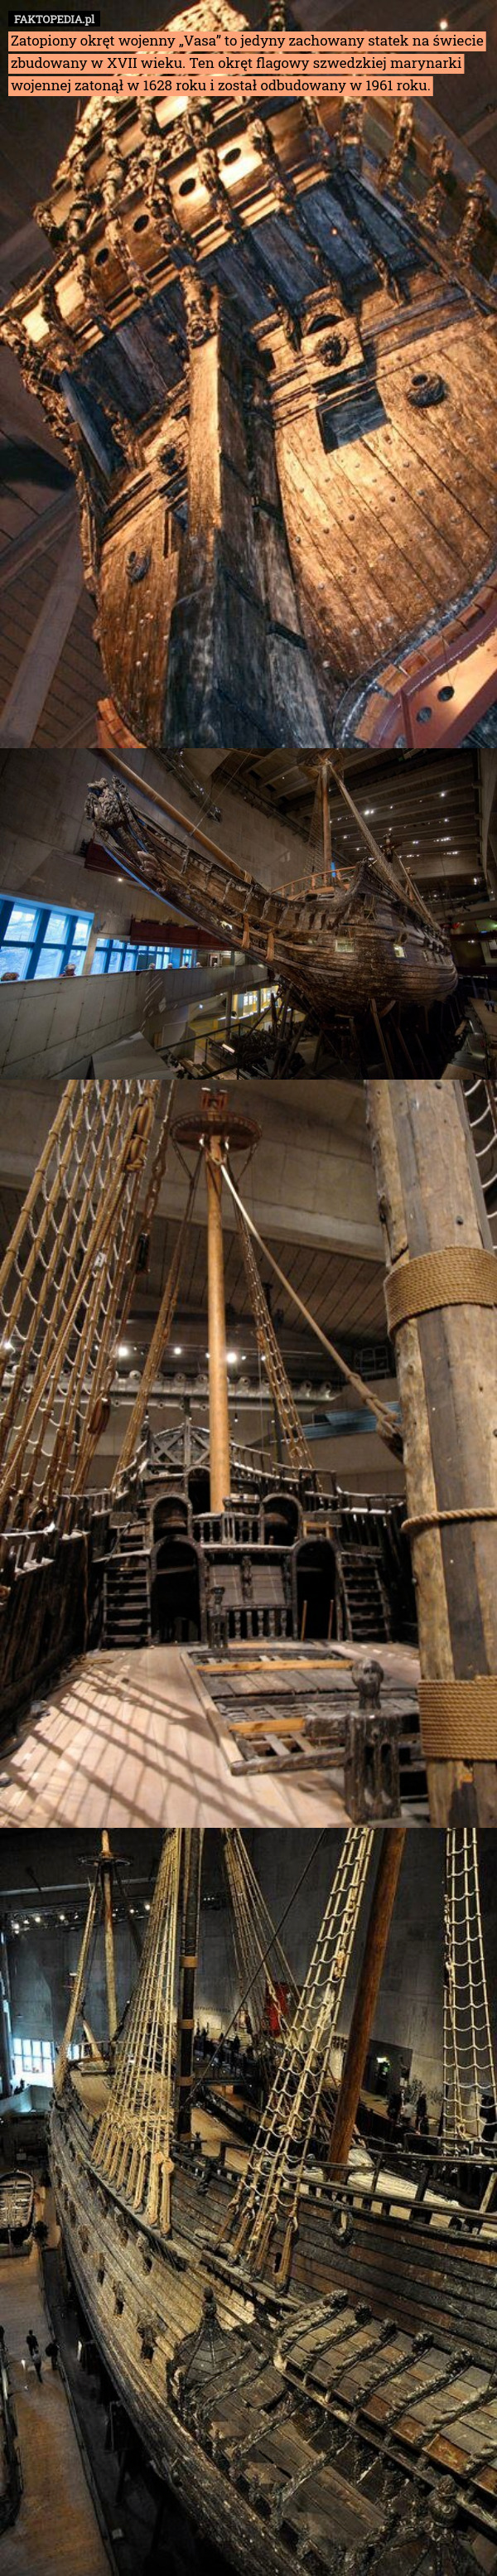 Zatopiony okręt wojenny „Vasa” to jedyny zachowany statek na świecie zbudowany w XVII wieku. Ten okręt flagowy szwedzkiej marynarki wojennej zatonął w 1628 roku i został odbudowany w 1961 roku. 